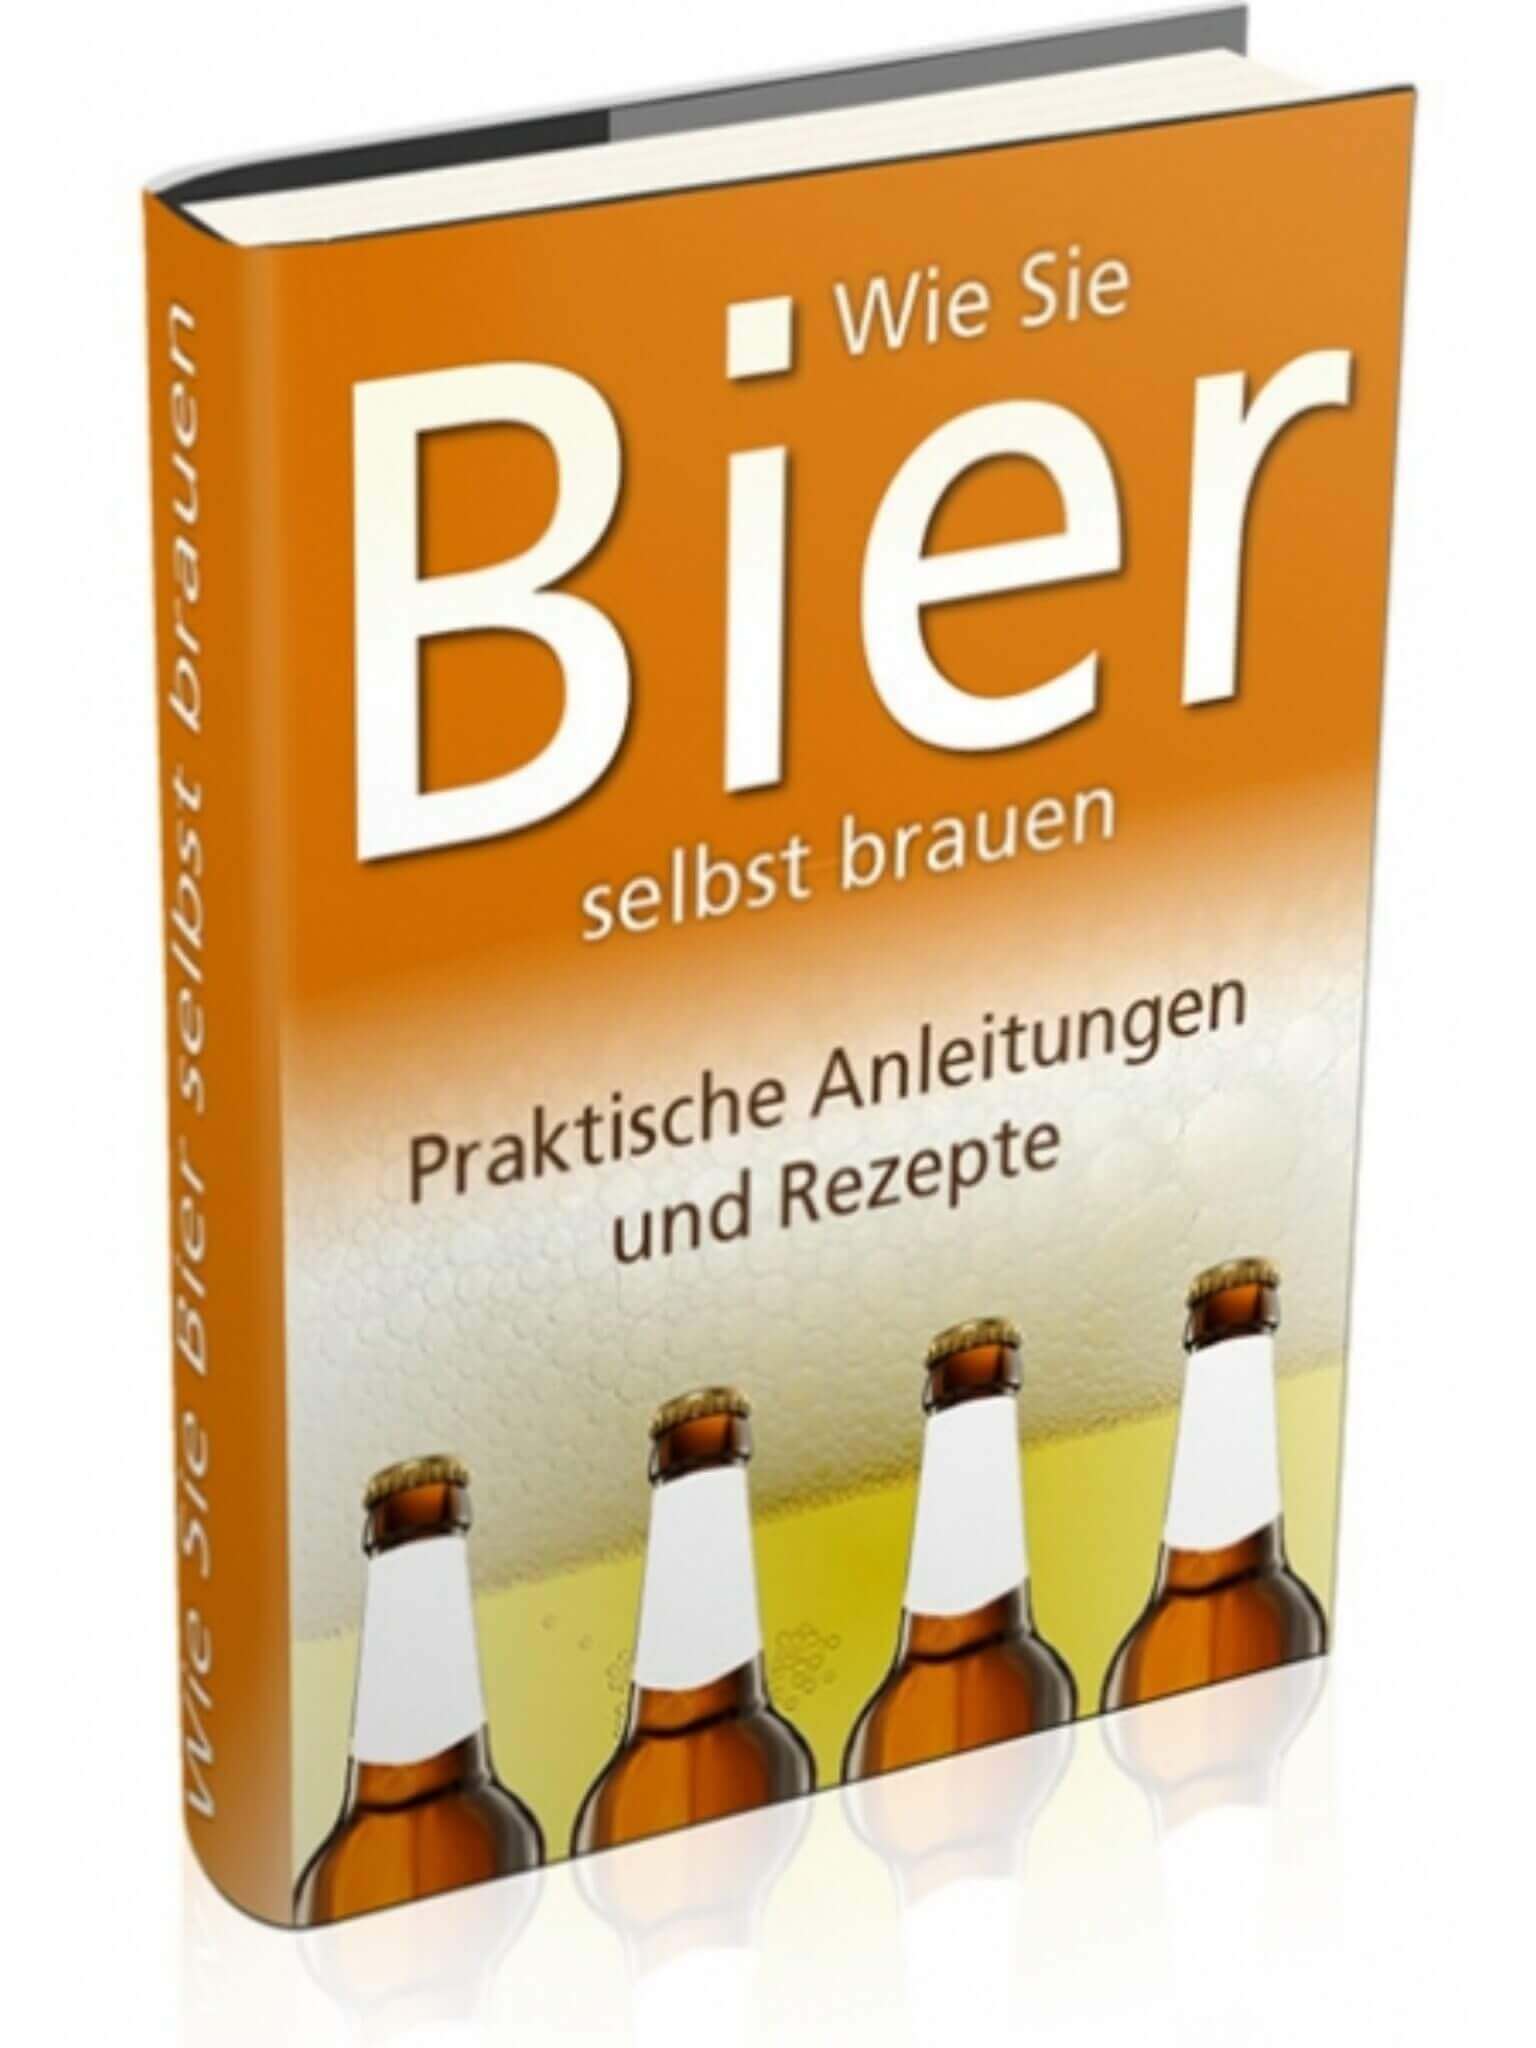 Bier selber brauen - Anleitung & Ratgeber von Tom Kreuzer 1